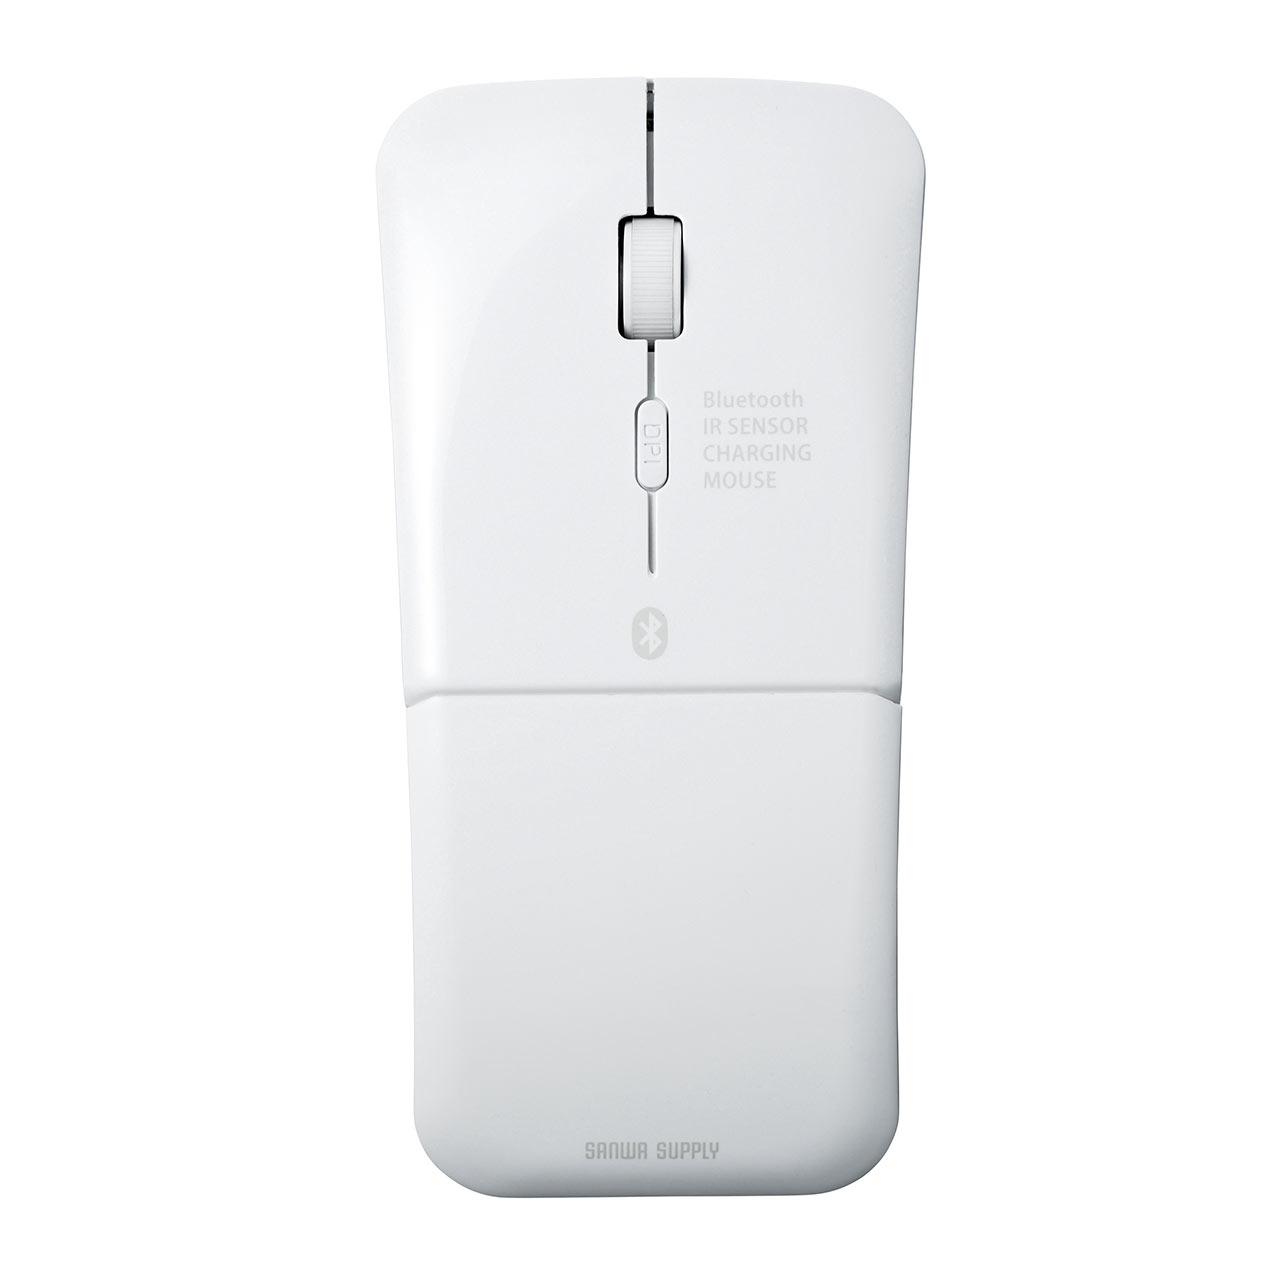 【ビジネス応援セール】薄型 Bluetoothマウス マルチペアリング対応 USB充電式 IRセンサー 折りたたみ式 3ボタン 400-MA120W